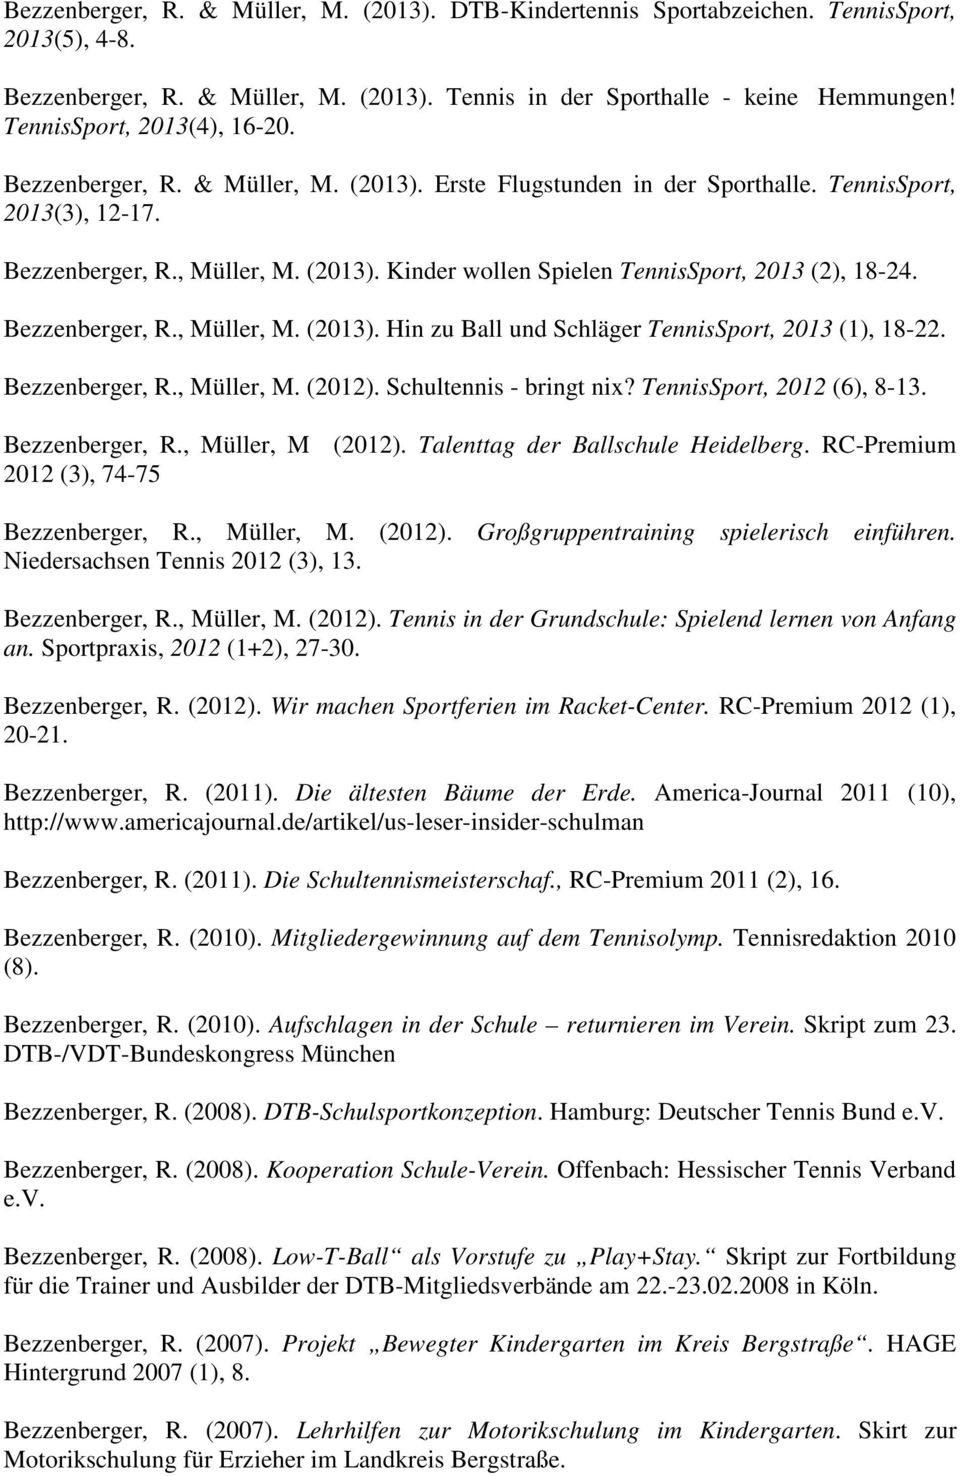 Bezzenberger, R., Müller, M. (2013). Hin zu Ball und Schläger TennisSport, 2013 (1), 18-22. Bezzenberger, R., Müller, M. (2012). Schultennis - bringt nix? TennisSport, 2012 (6), 8-13. Bezzenberger, R., Müller, M (2012).